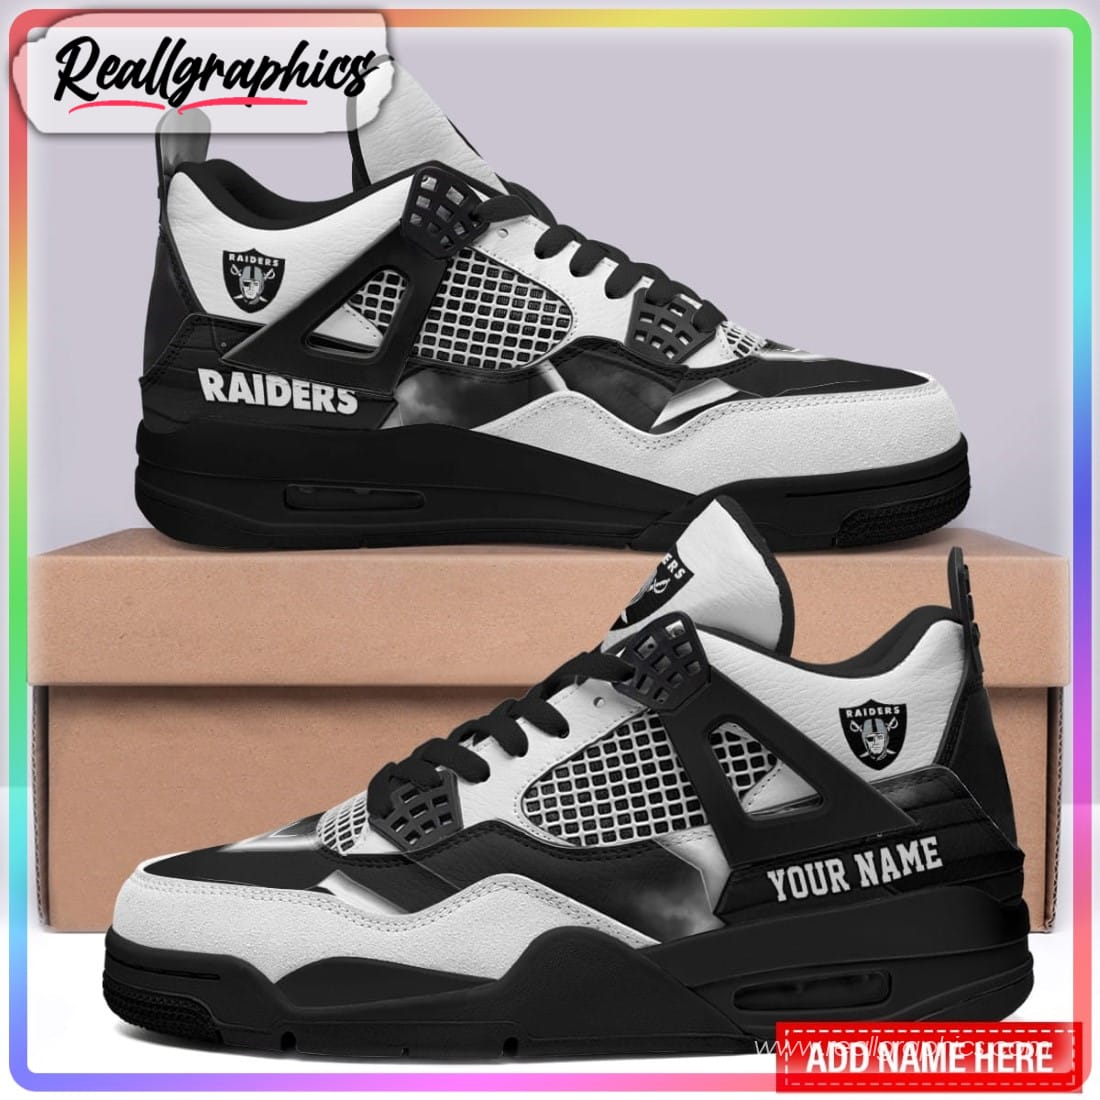 Las Vegas Raiders Personalized Air Jordan 4 Sneaker, Raiders